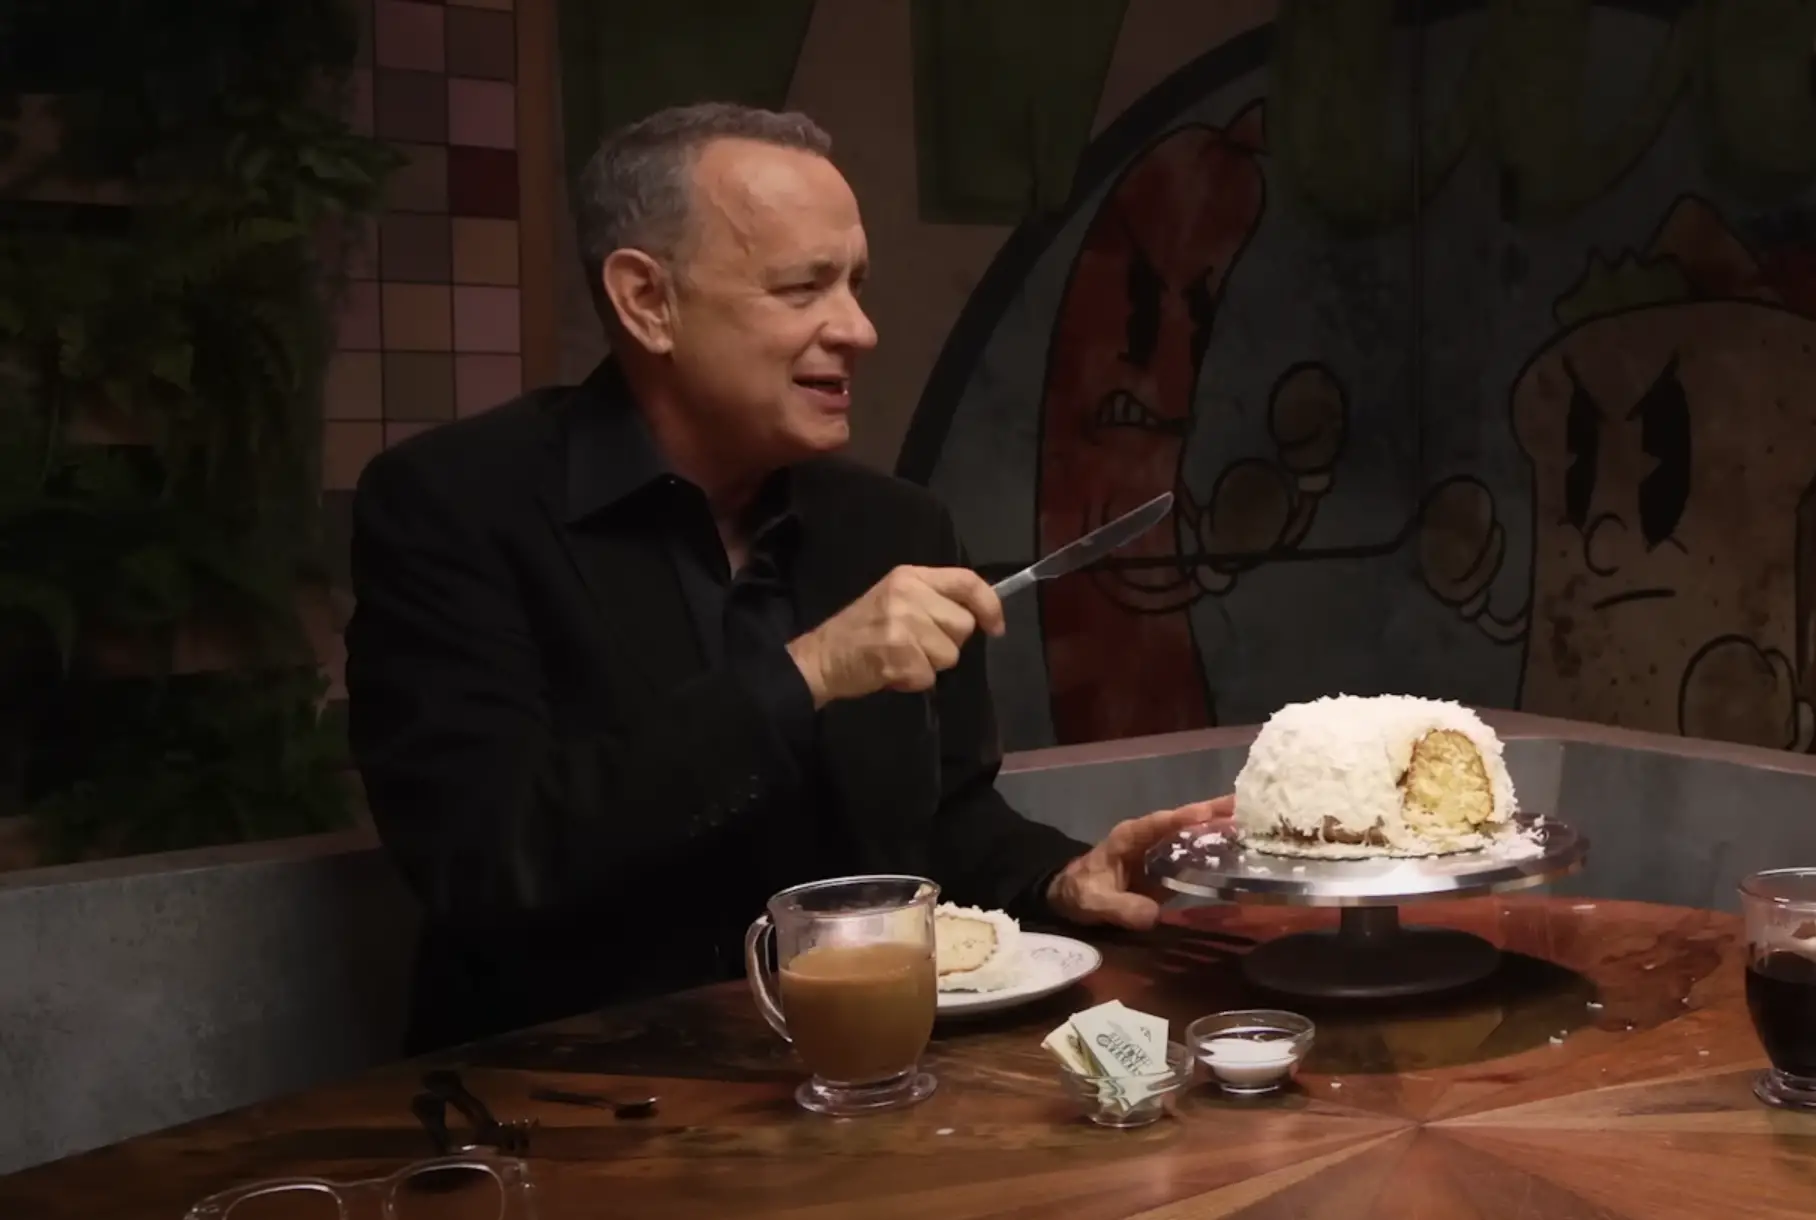 Tom Hanks zeigt die Bunt-Torte von Doan's Bakery, die er als Weihnachtsgeschenk von Tom Cruise erhält. Die Torte wurde auf Mythical Kitchen am 19. Januar 2023 gezeigt | Quelle: YouTube/Mythical Kitchen